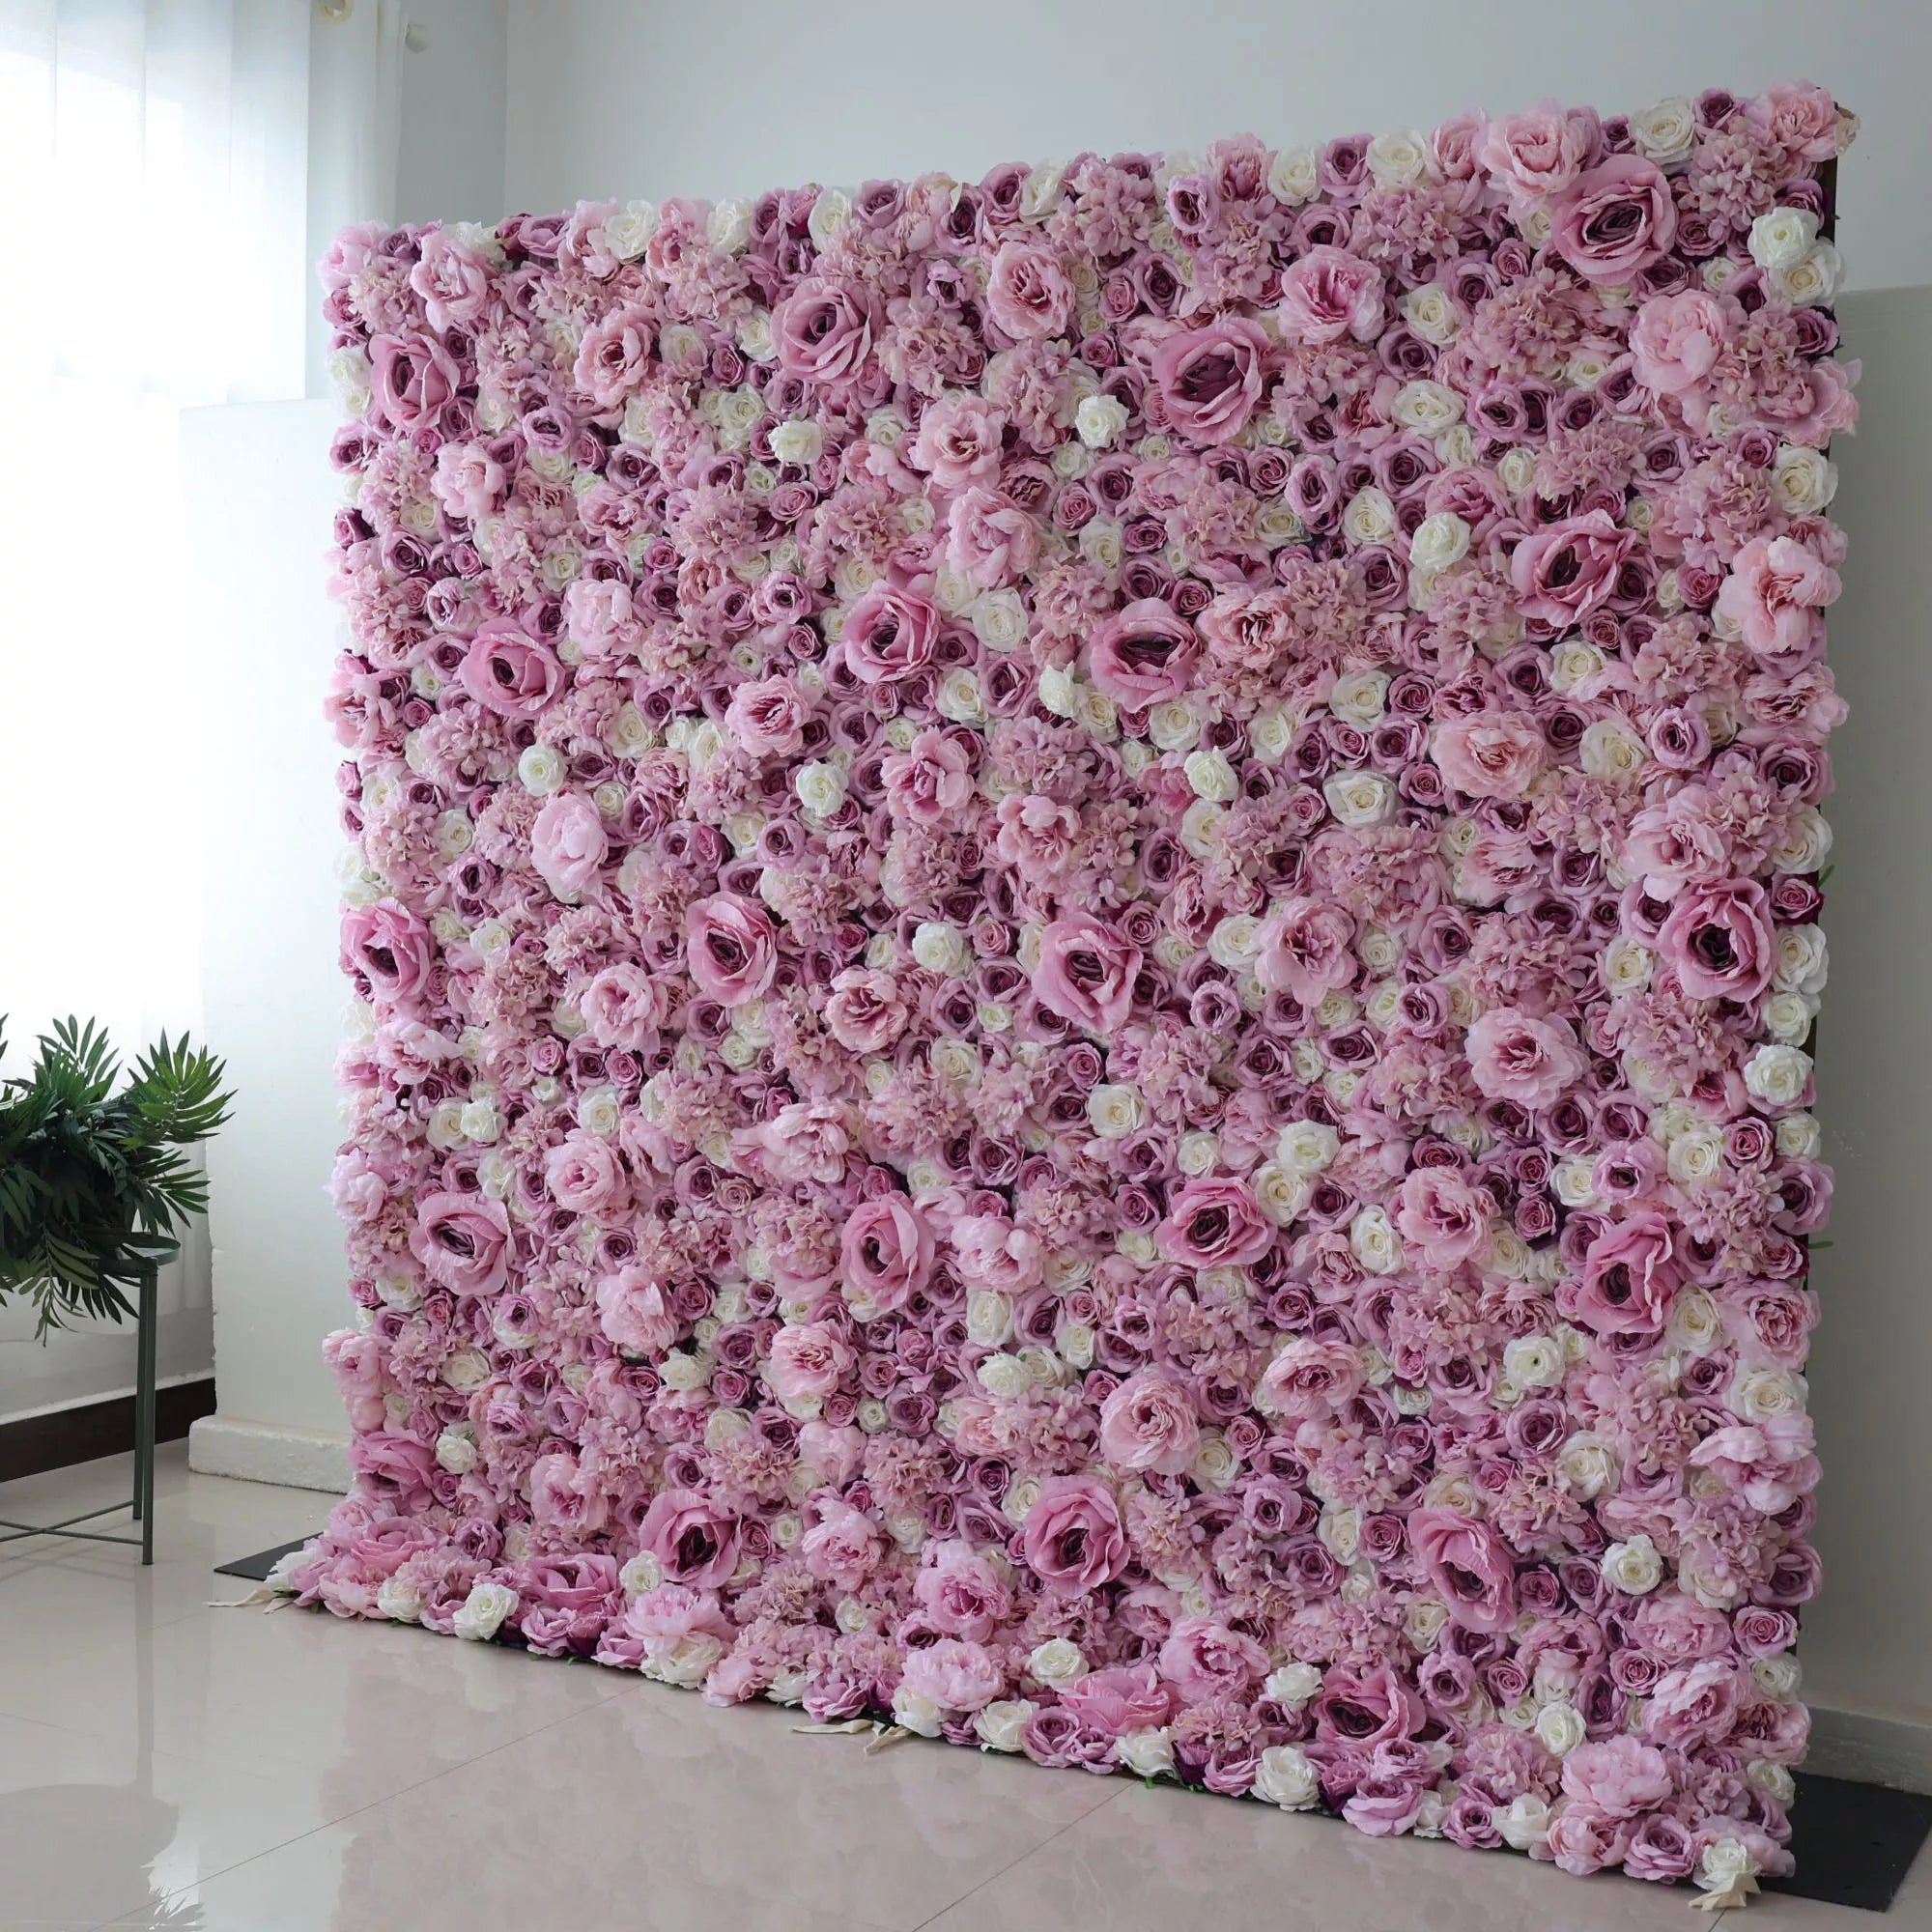 خلفية جدارية للزفاف مزخرفة بزهور فالار ، خلفية لحفلات الزفاف من زهور الورد والأرجواني ، ديكور حفلات بزهور ، مناسبة